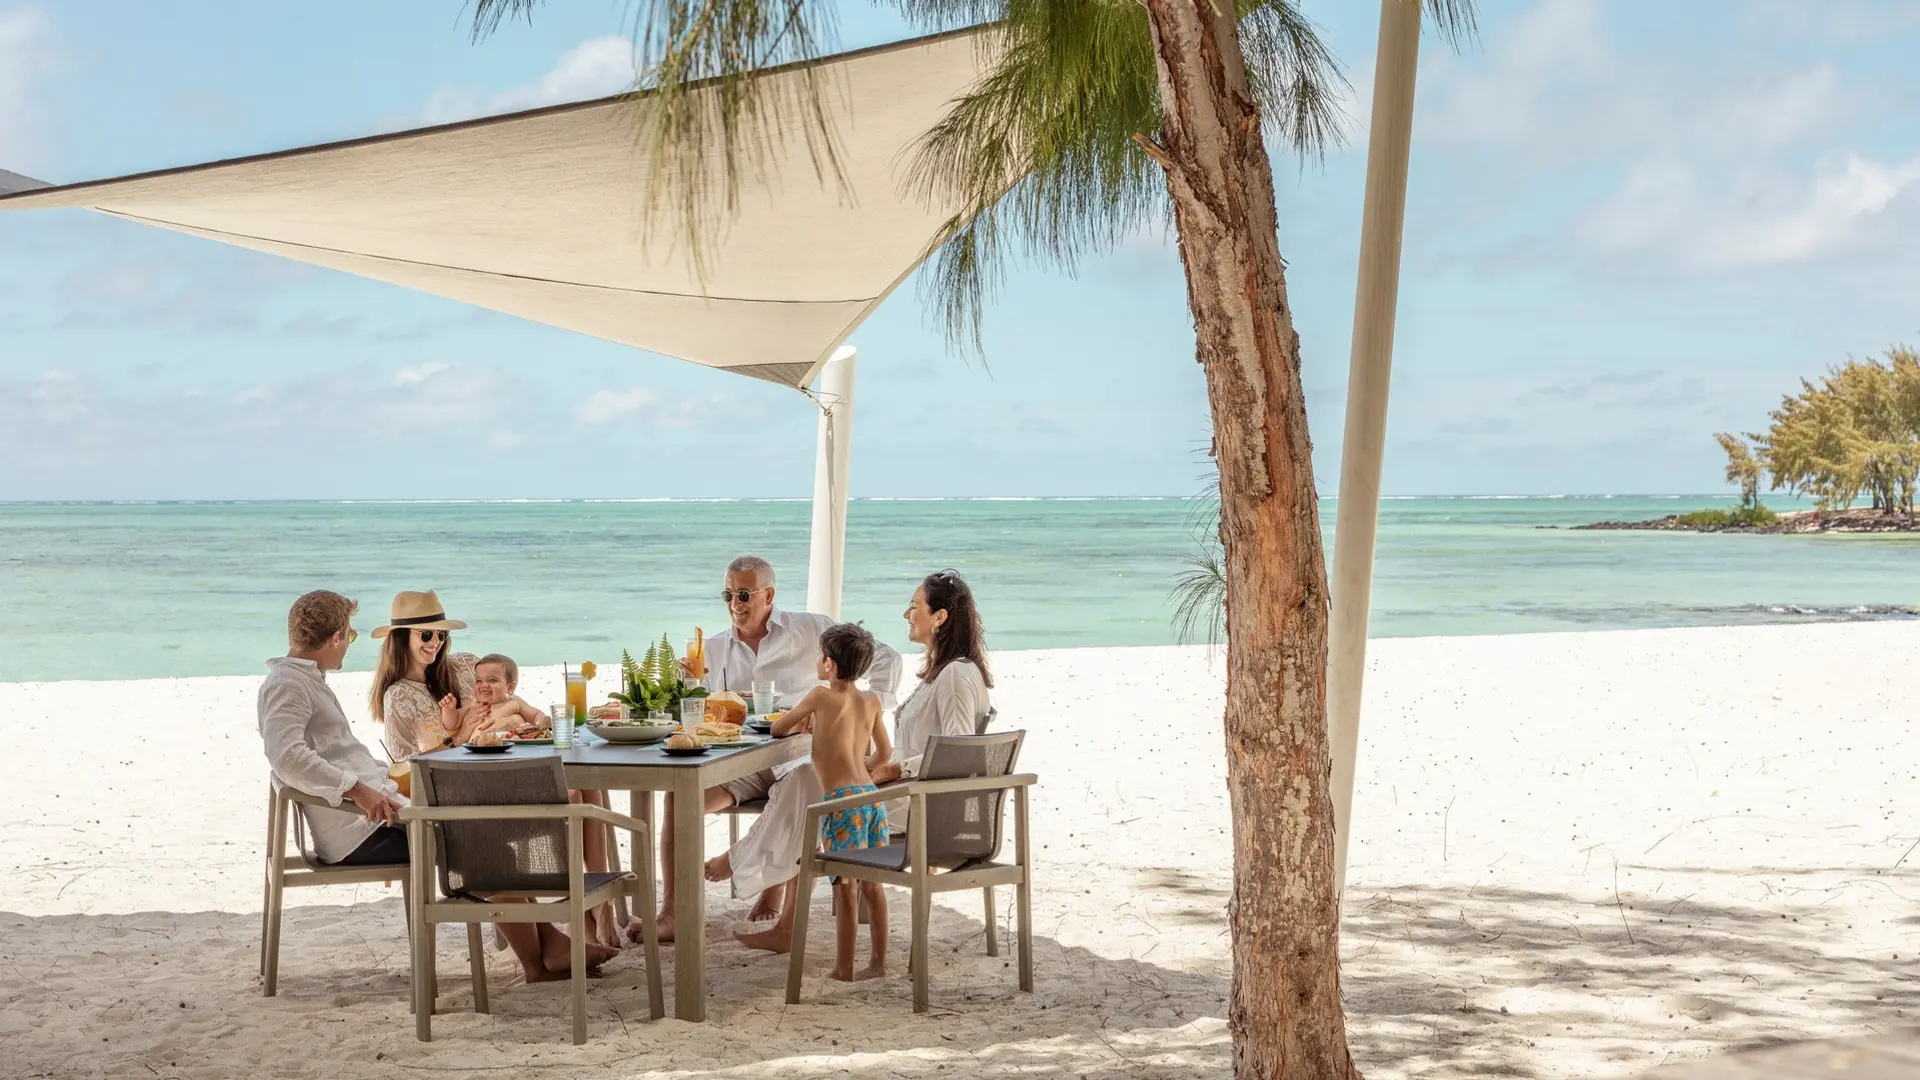 Hotel review Service & Facilities' - Four Seasons Resort Mauritius at Anahita - 7